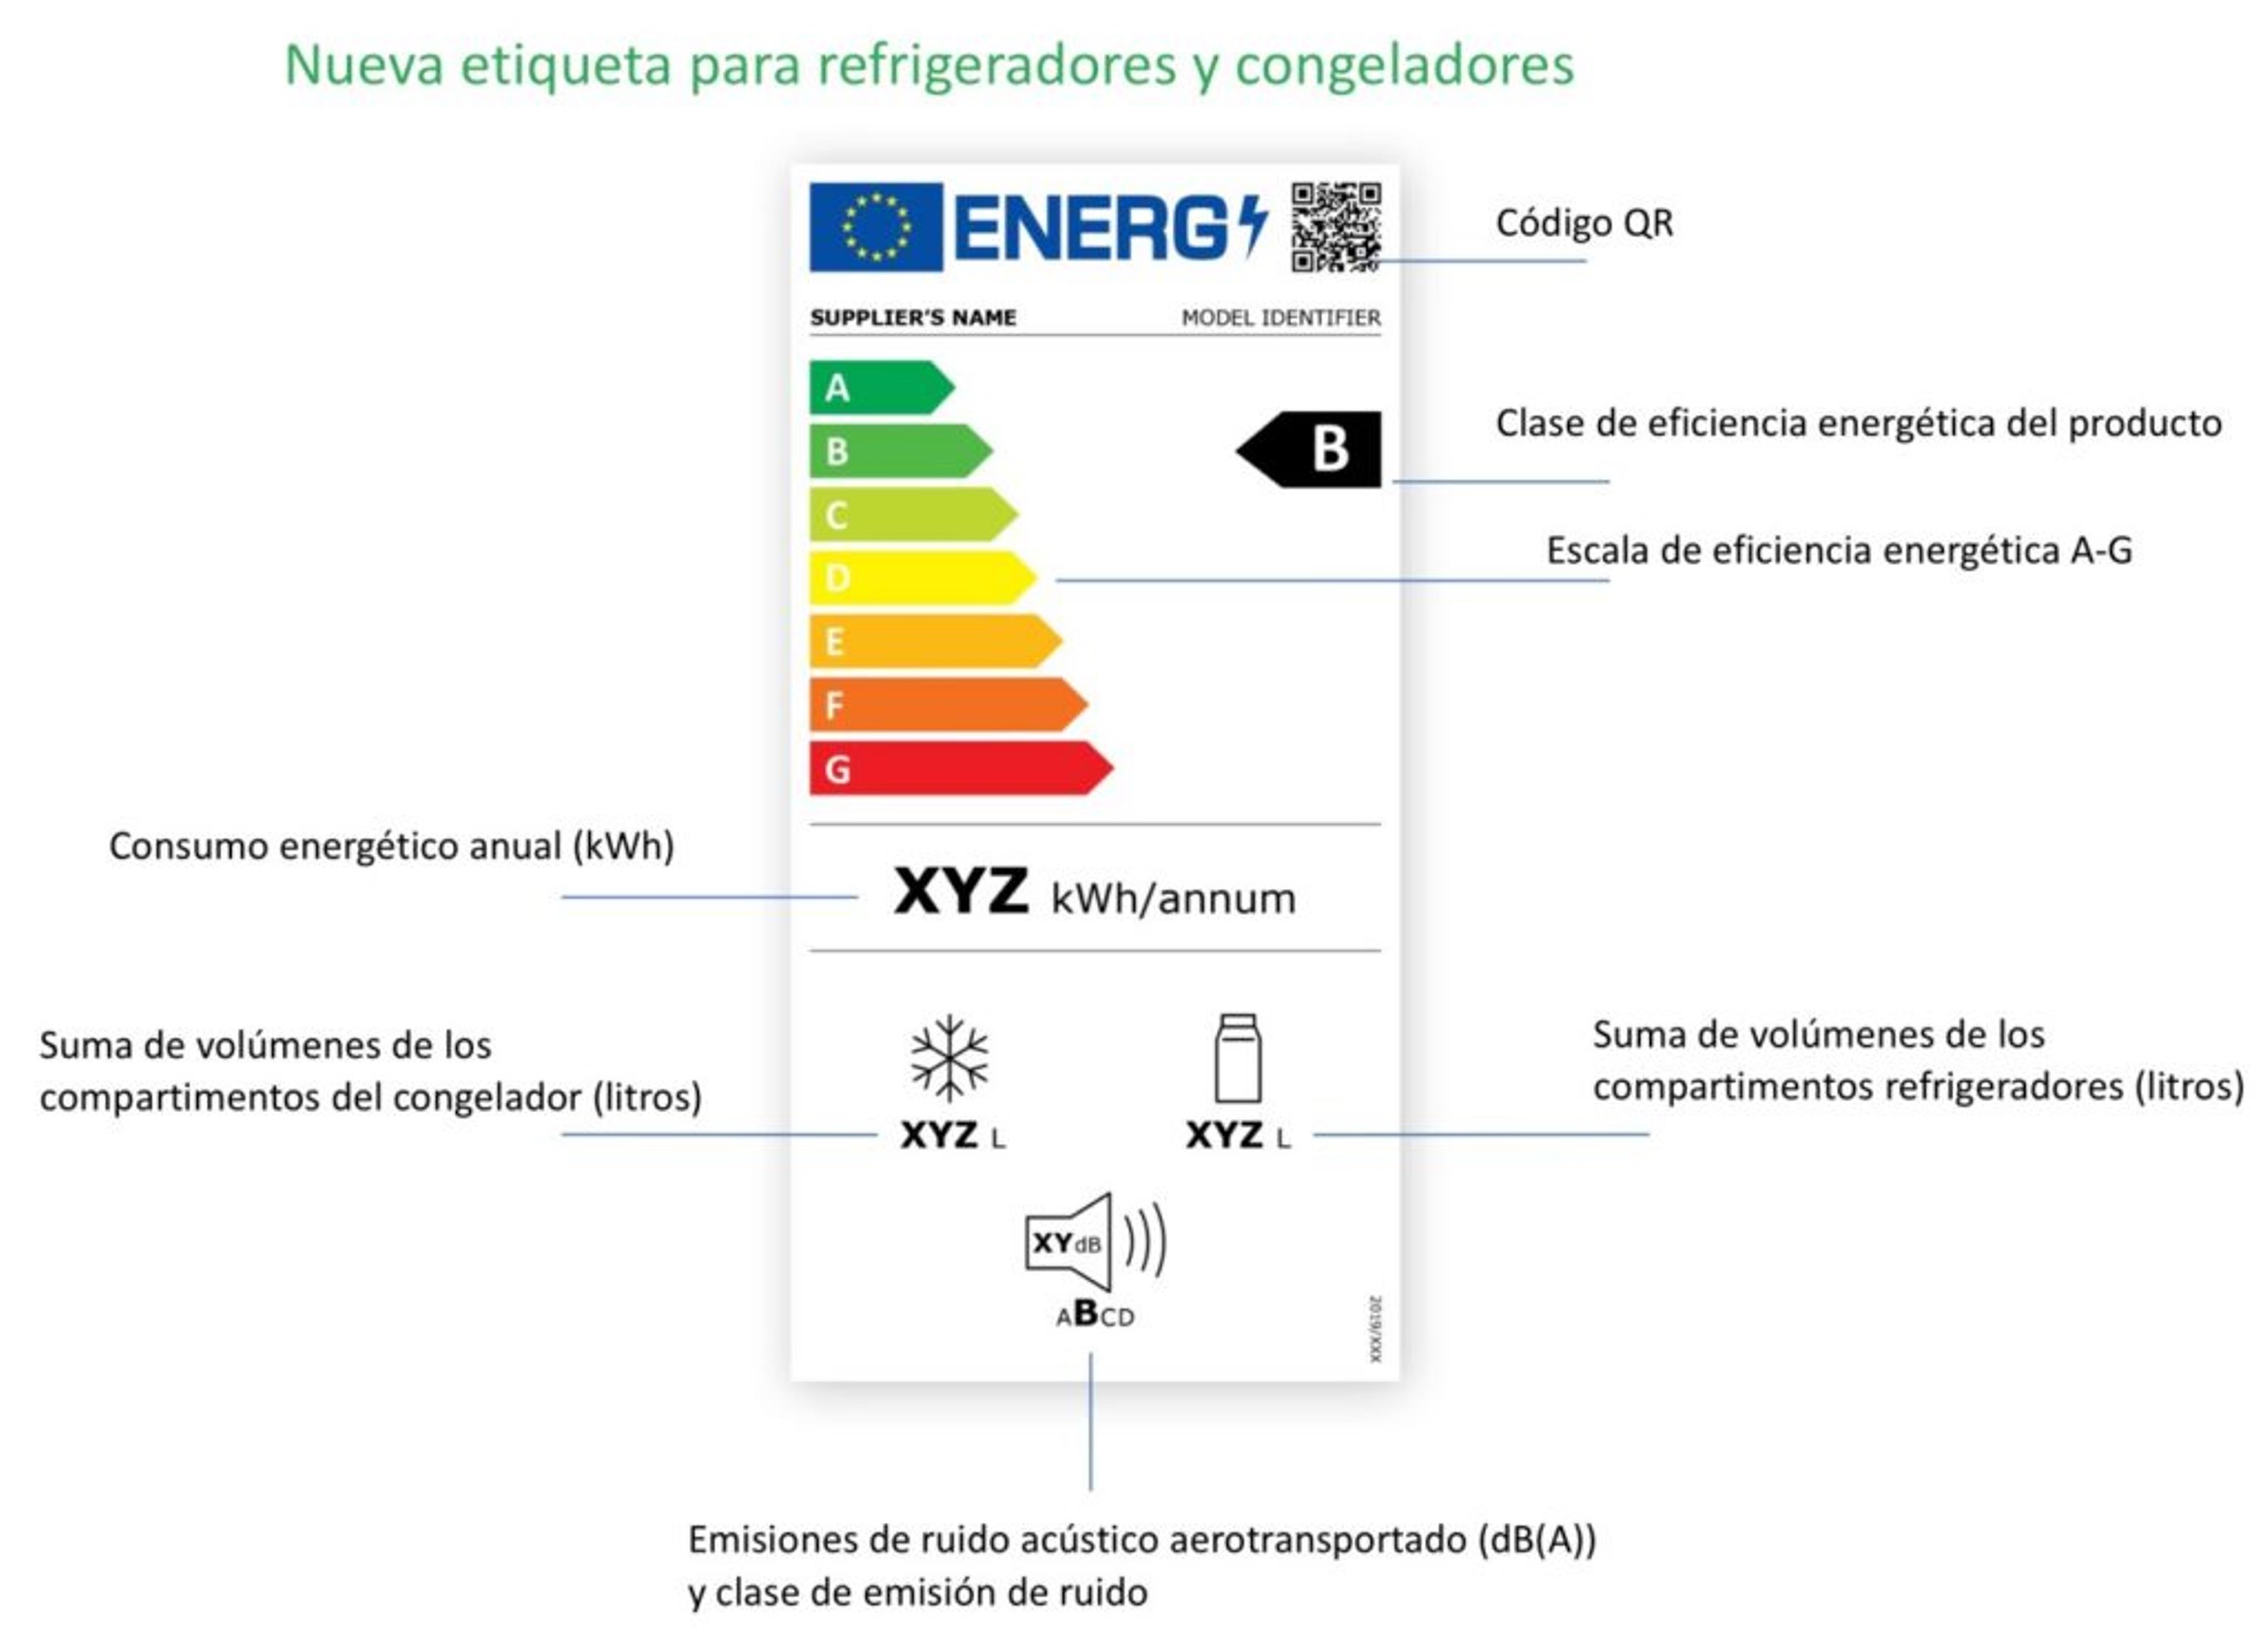 Hoy se estrena la nueva clasificación energética de electrodomésticos en la UE